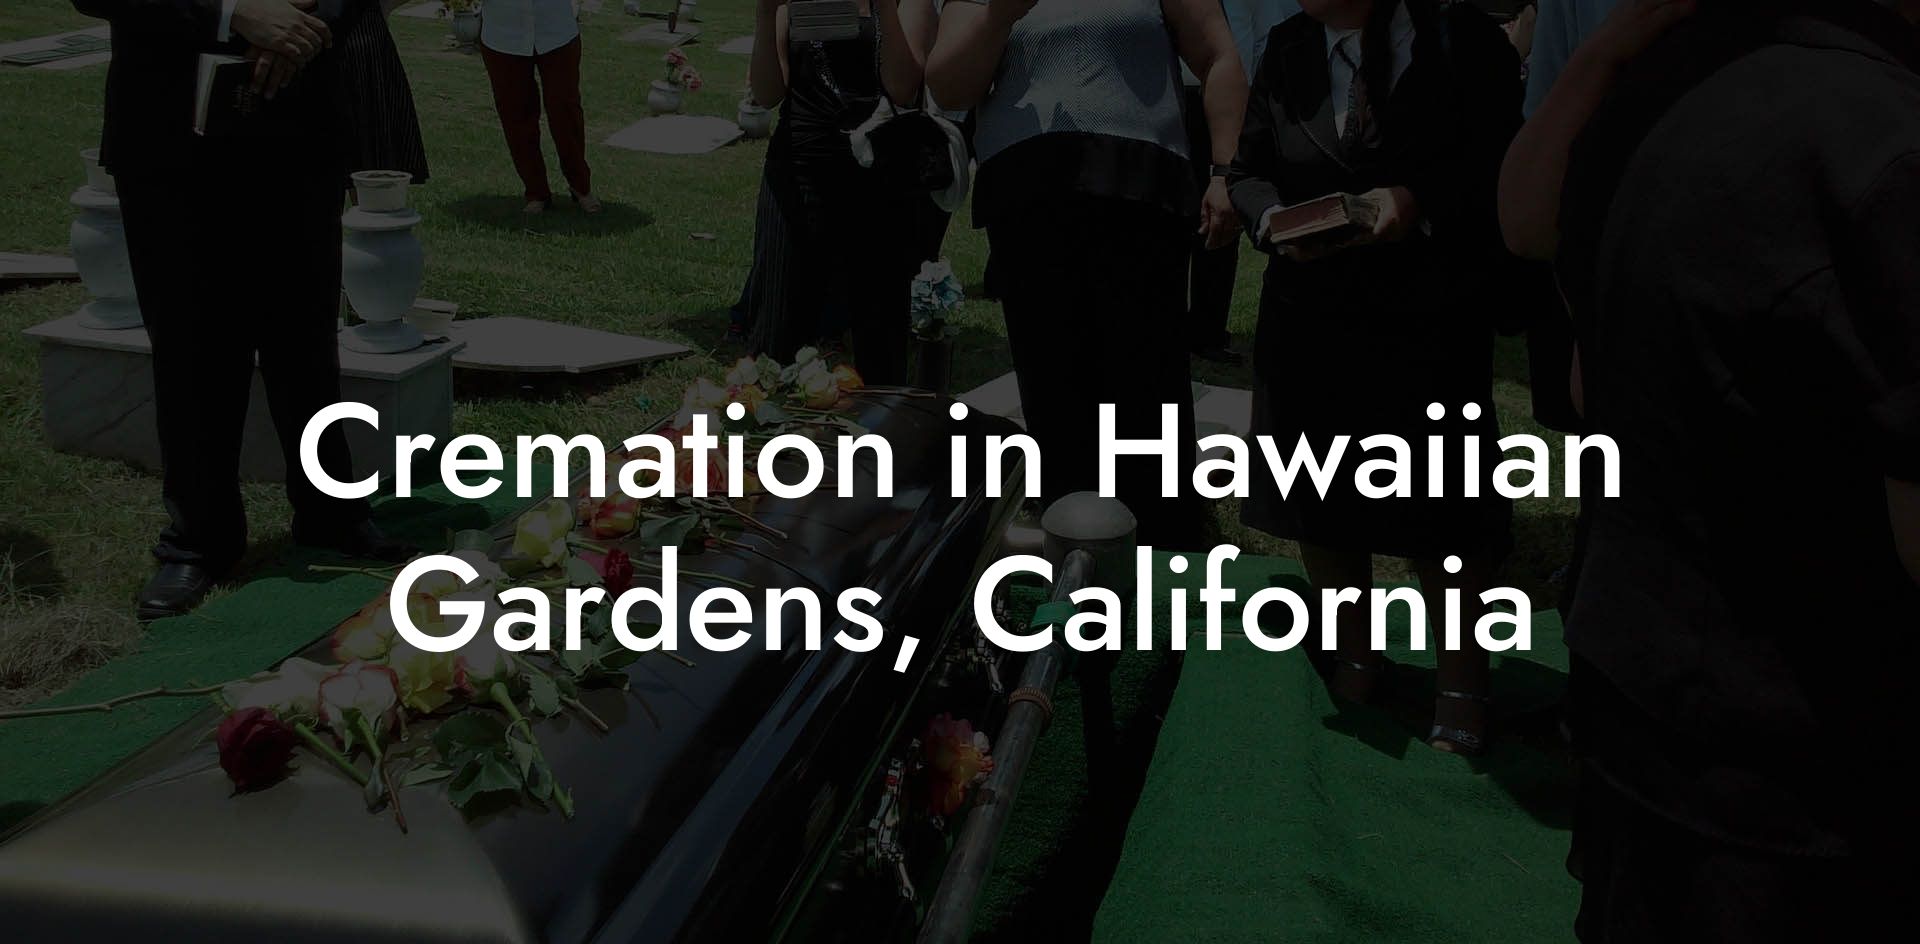 Cremation in Hawaiian Gardens, California